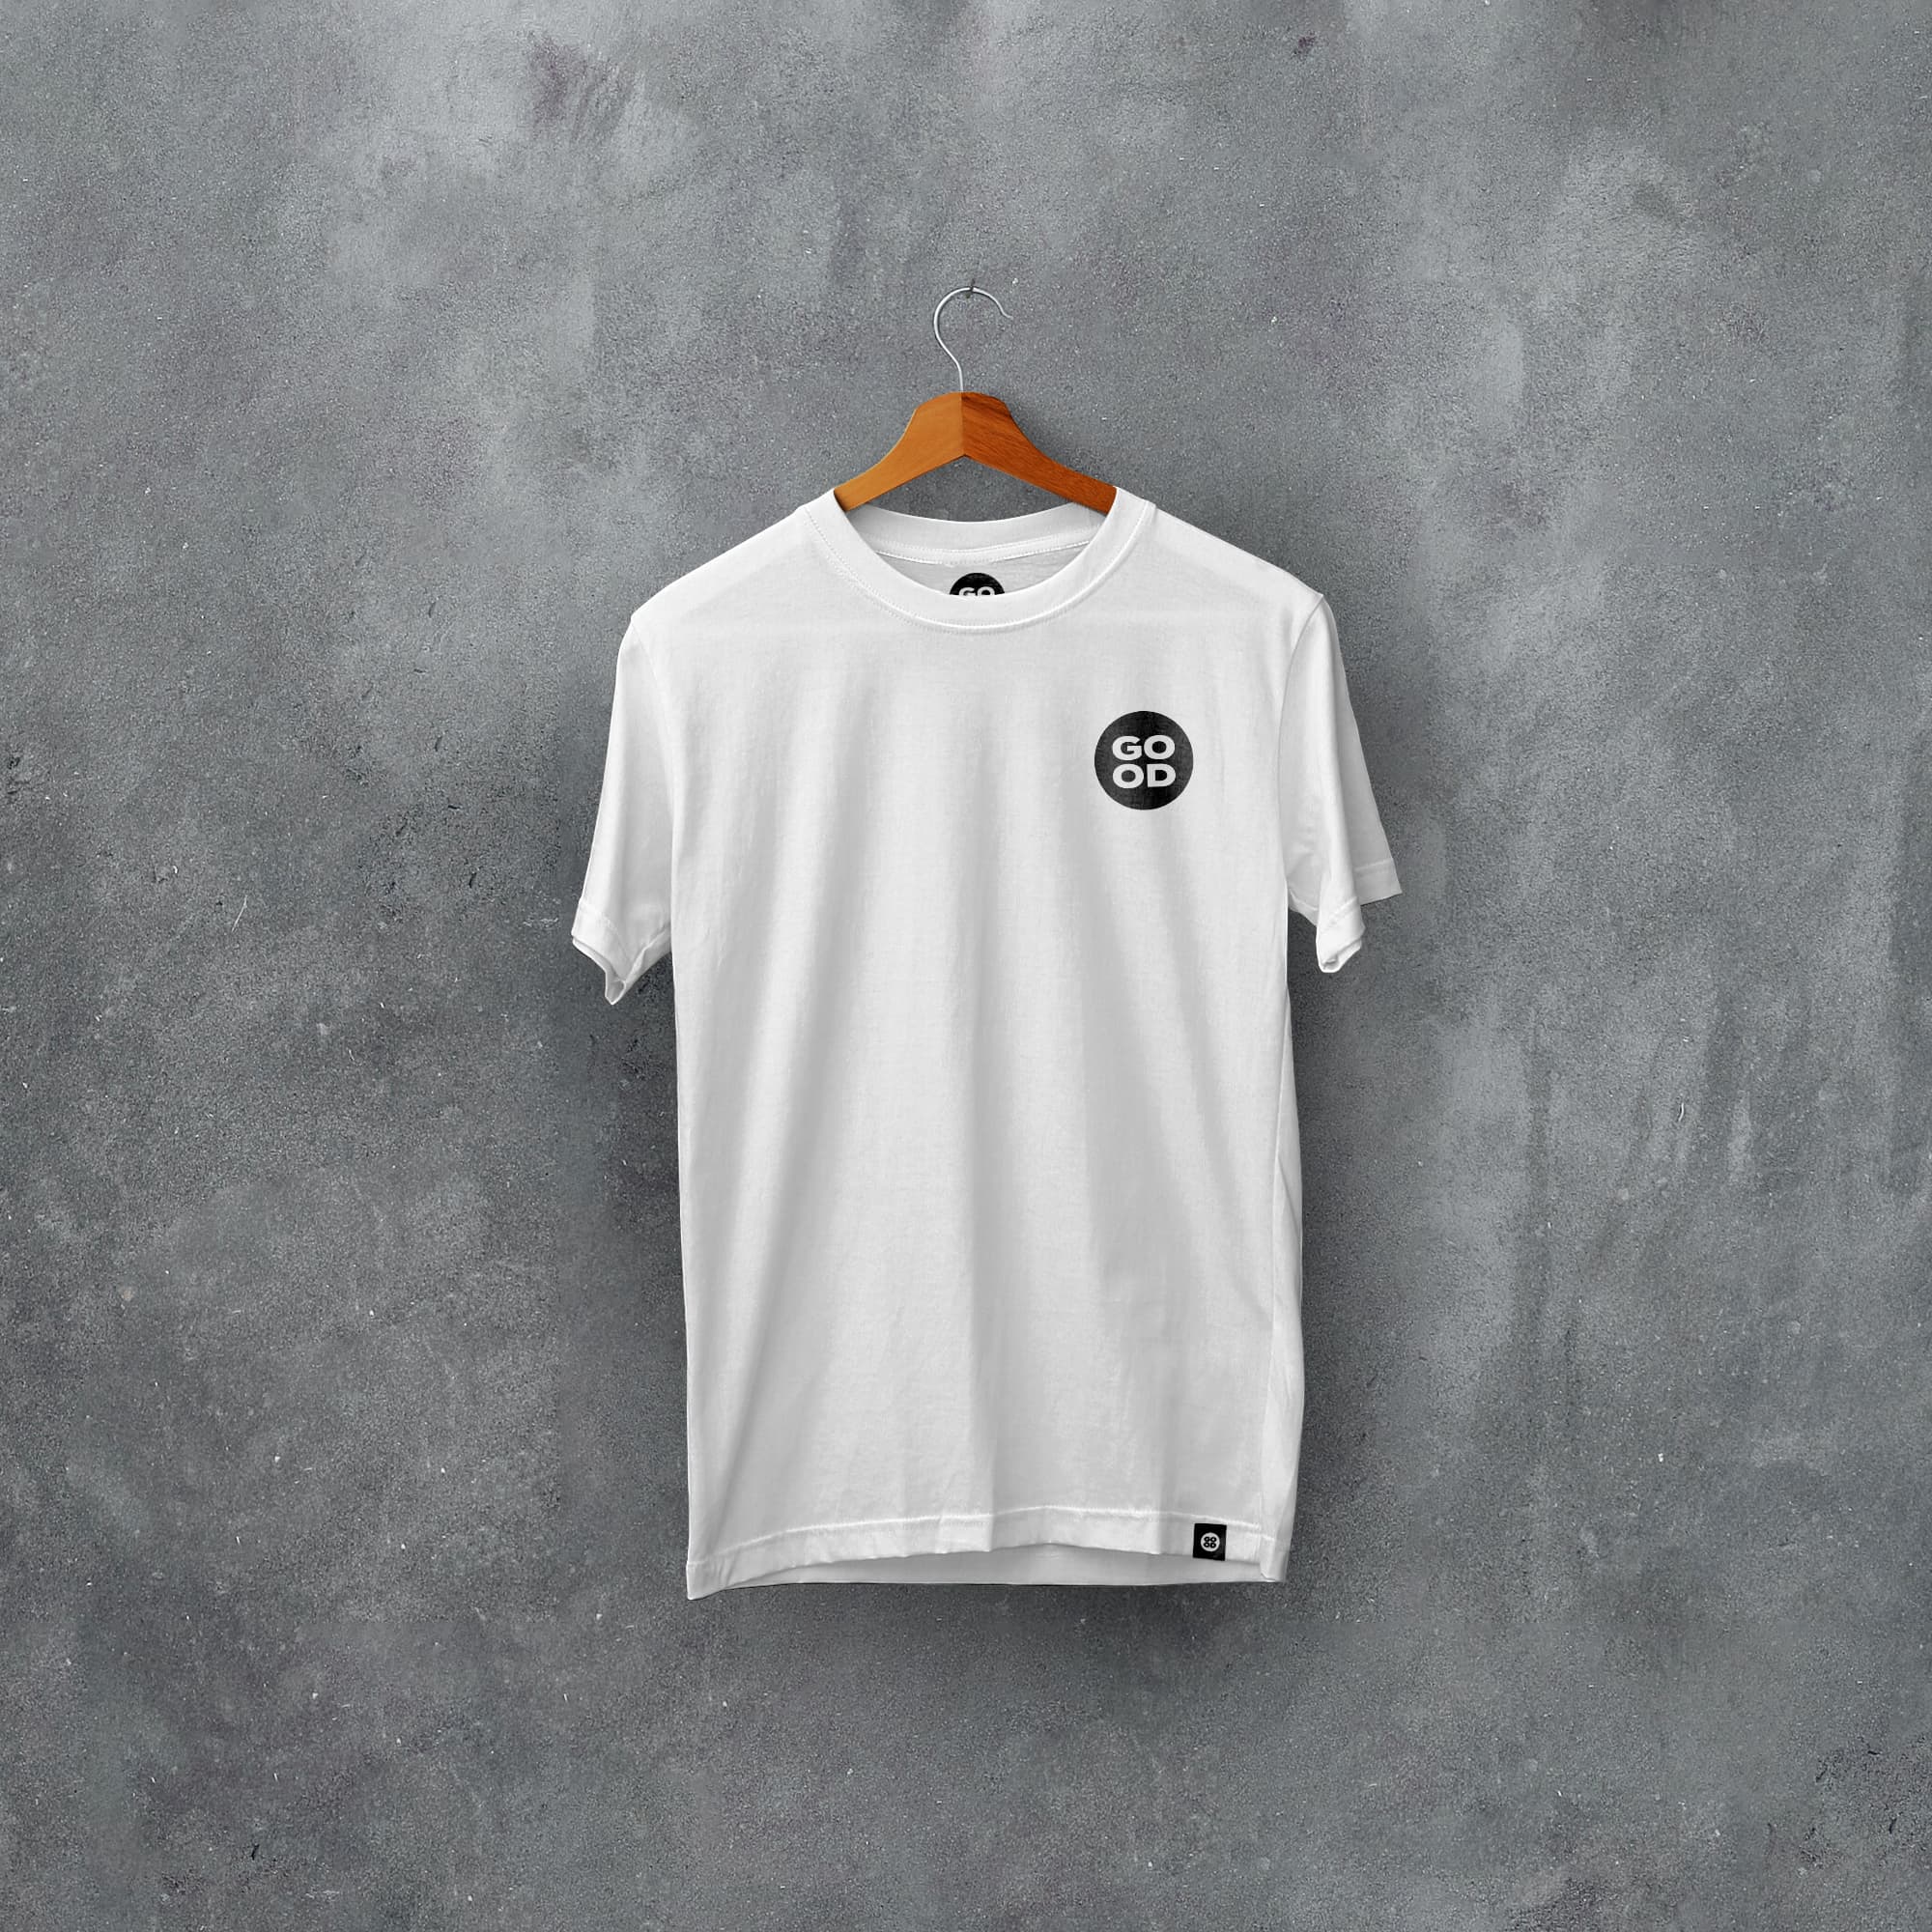 Wigan Classic Kits Football T-Shirt